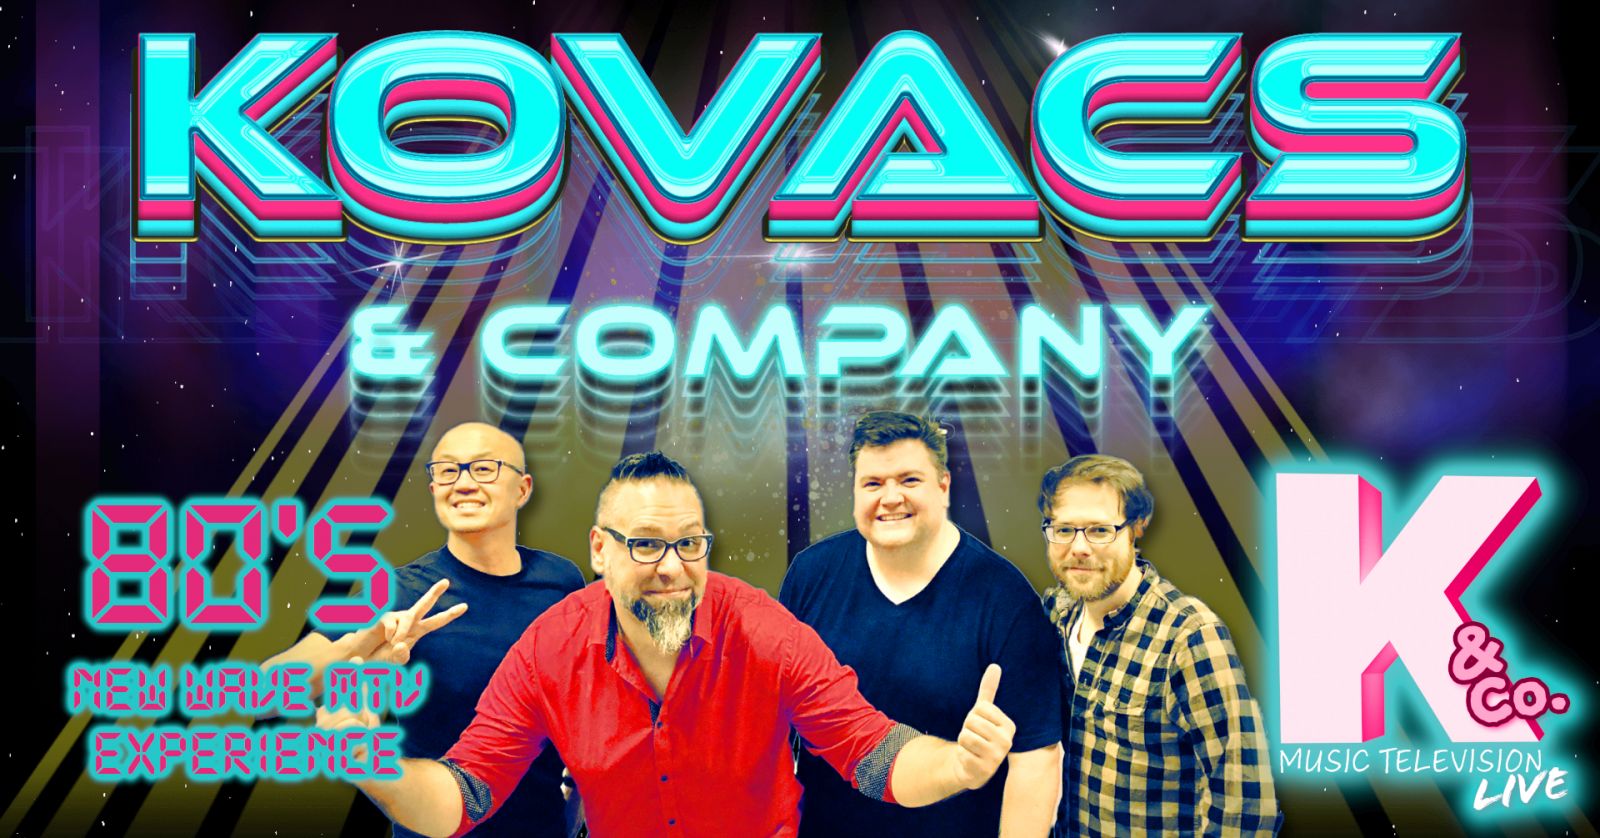 Kovacs & Company